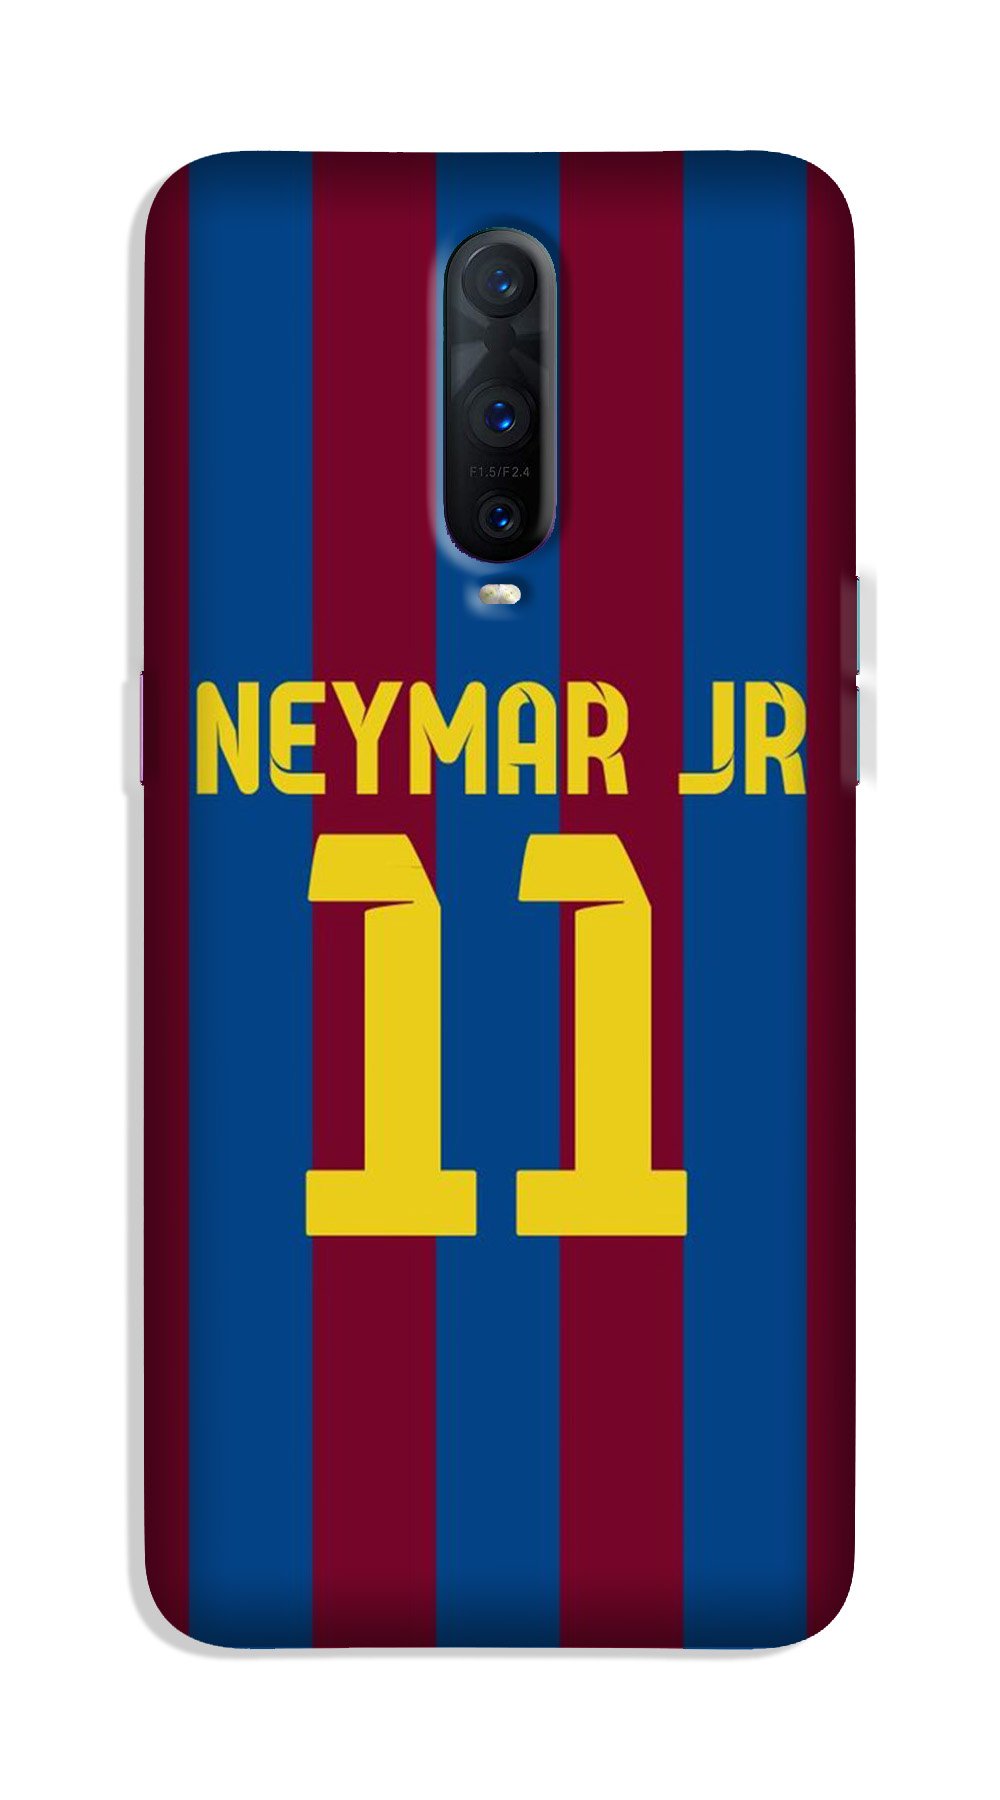 Neymar Jr Case for Oppo R17 Pro(Design - 162)